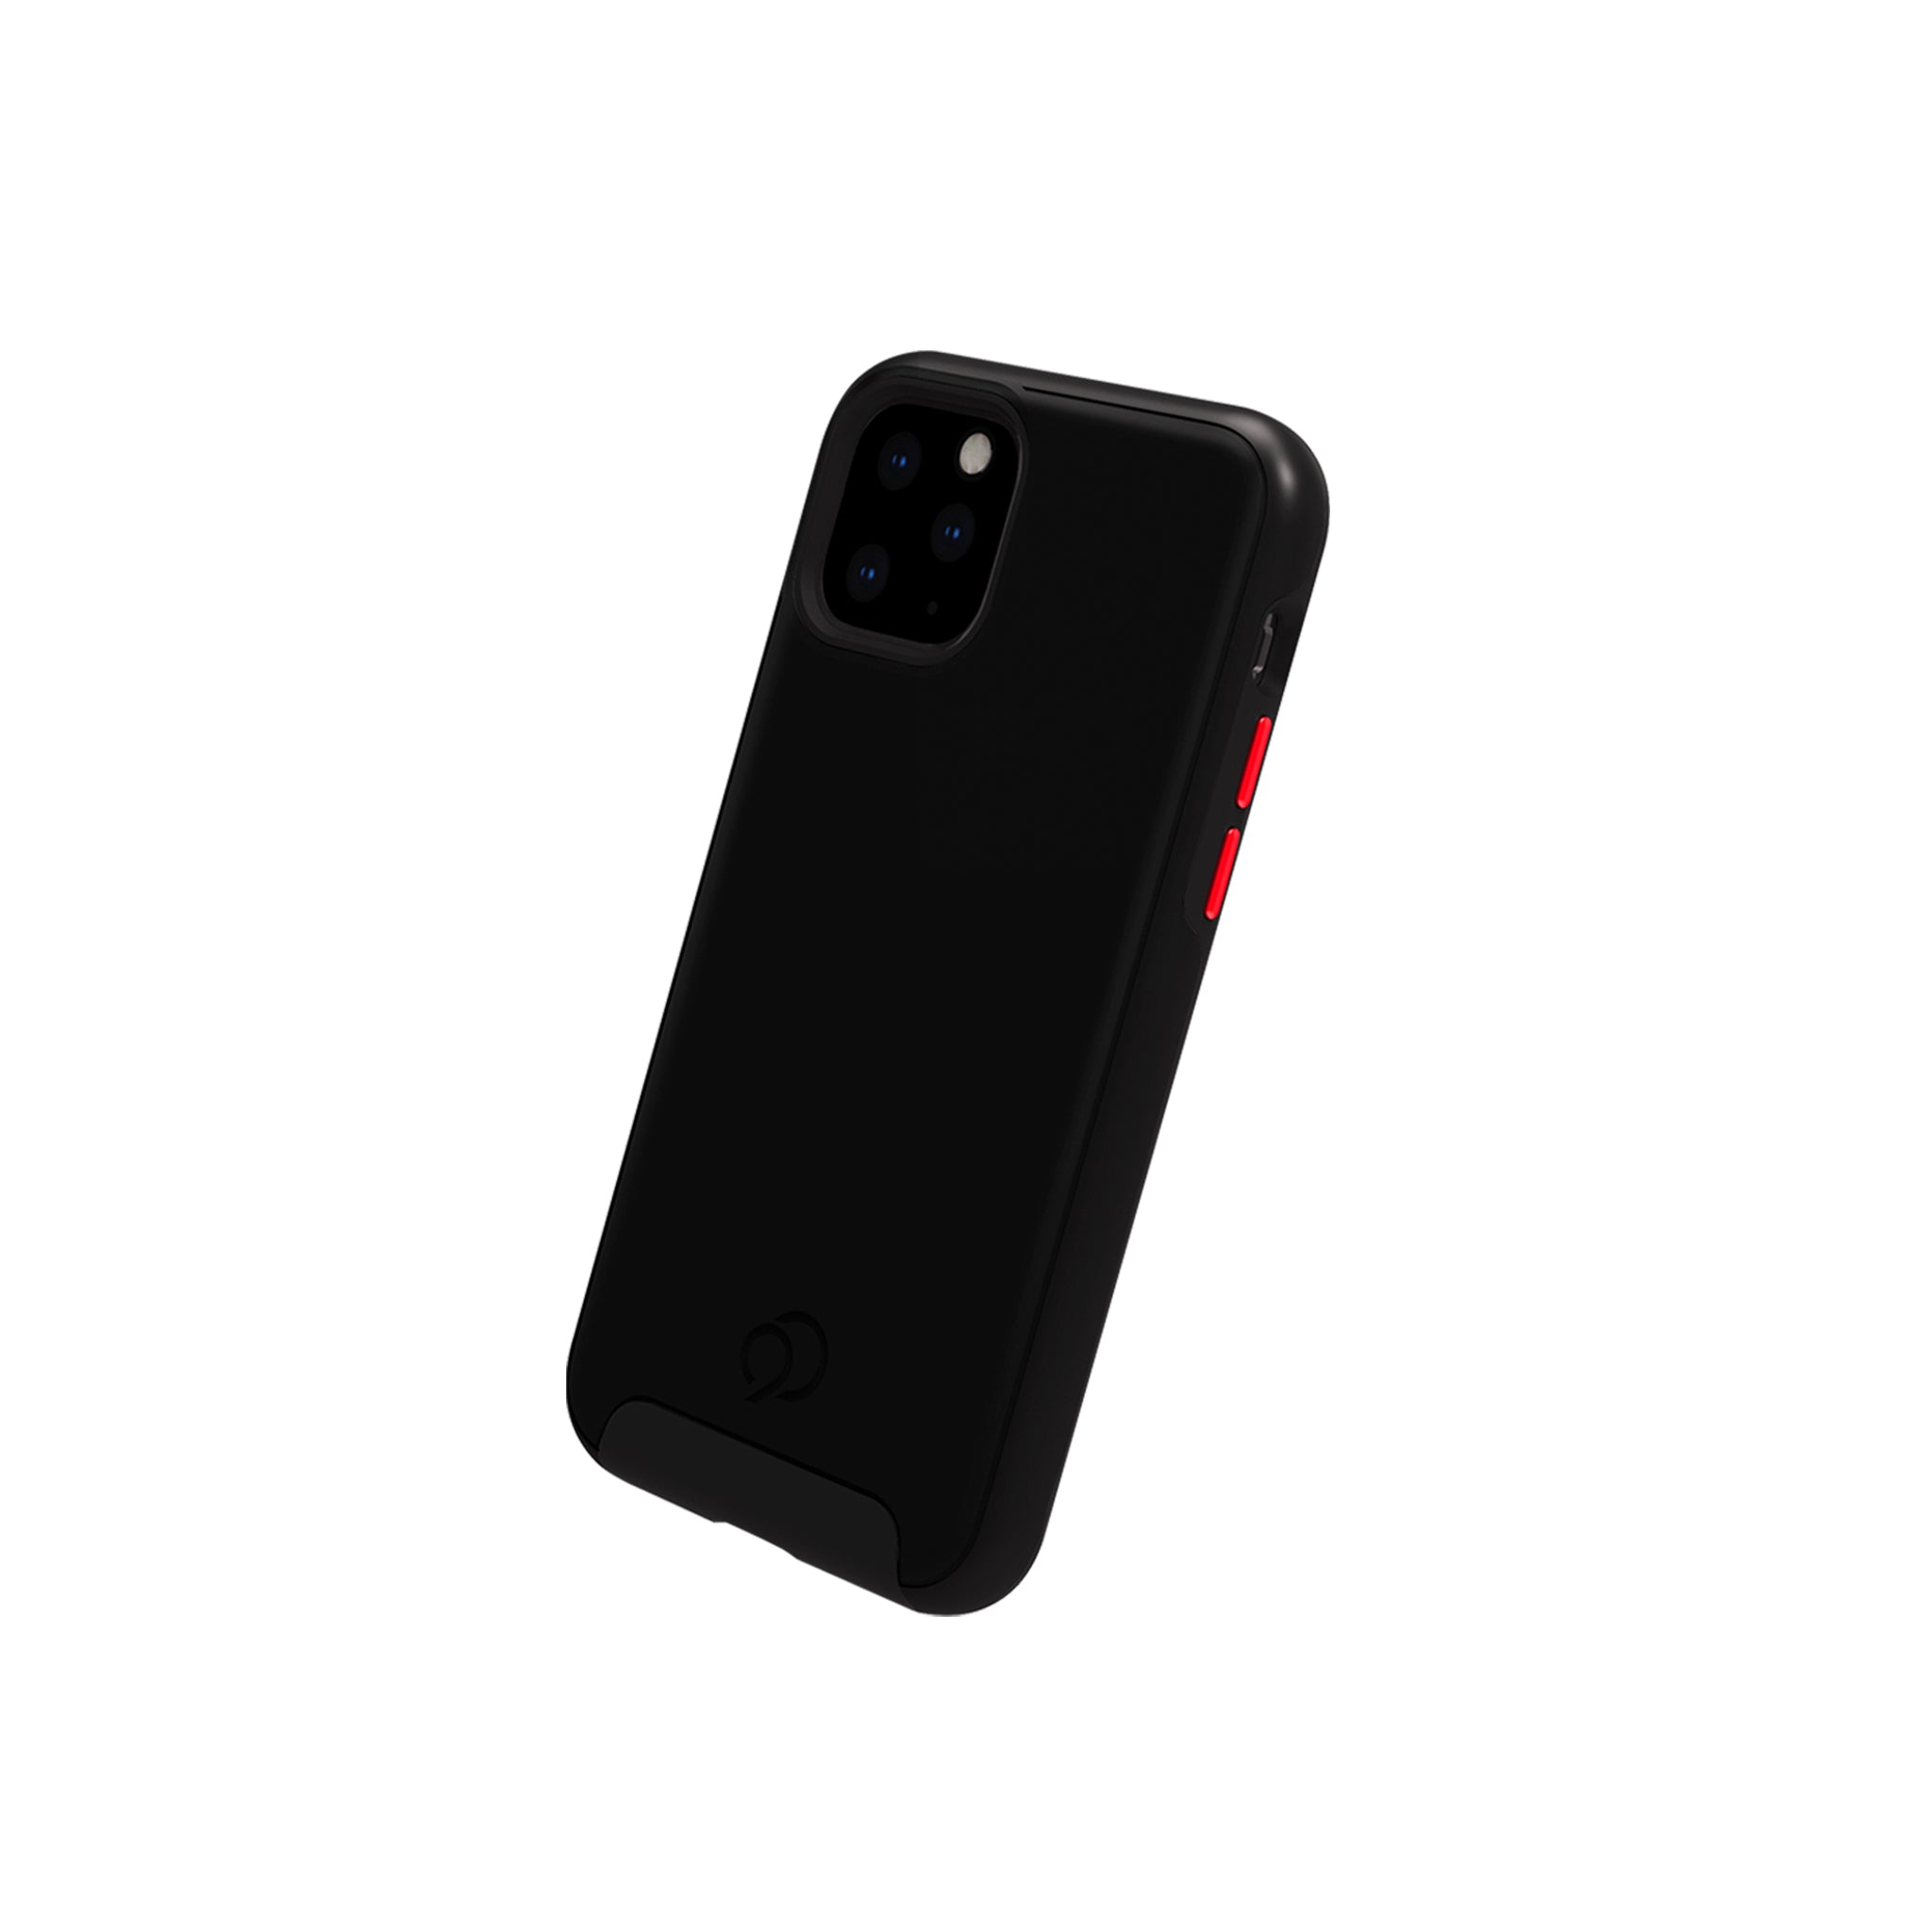 Nimbus9 - Cirrus 2 Case For Apple Iphone 11 Pro - Black